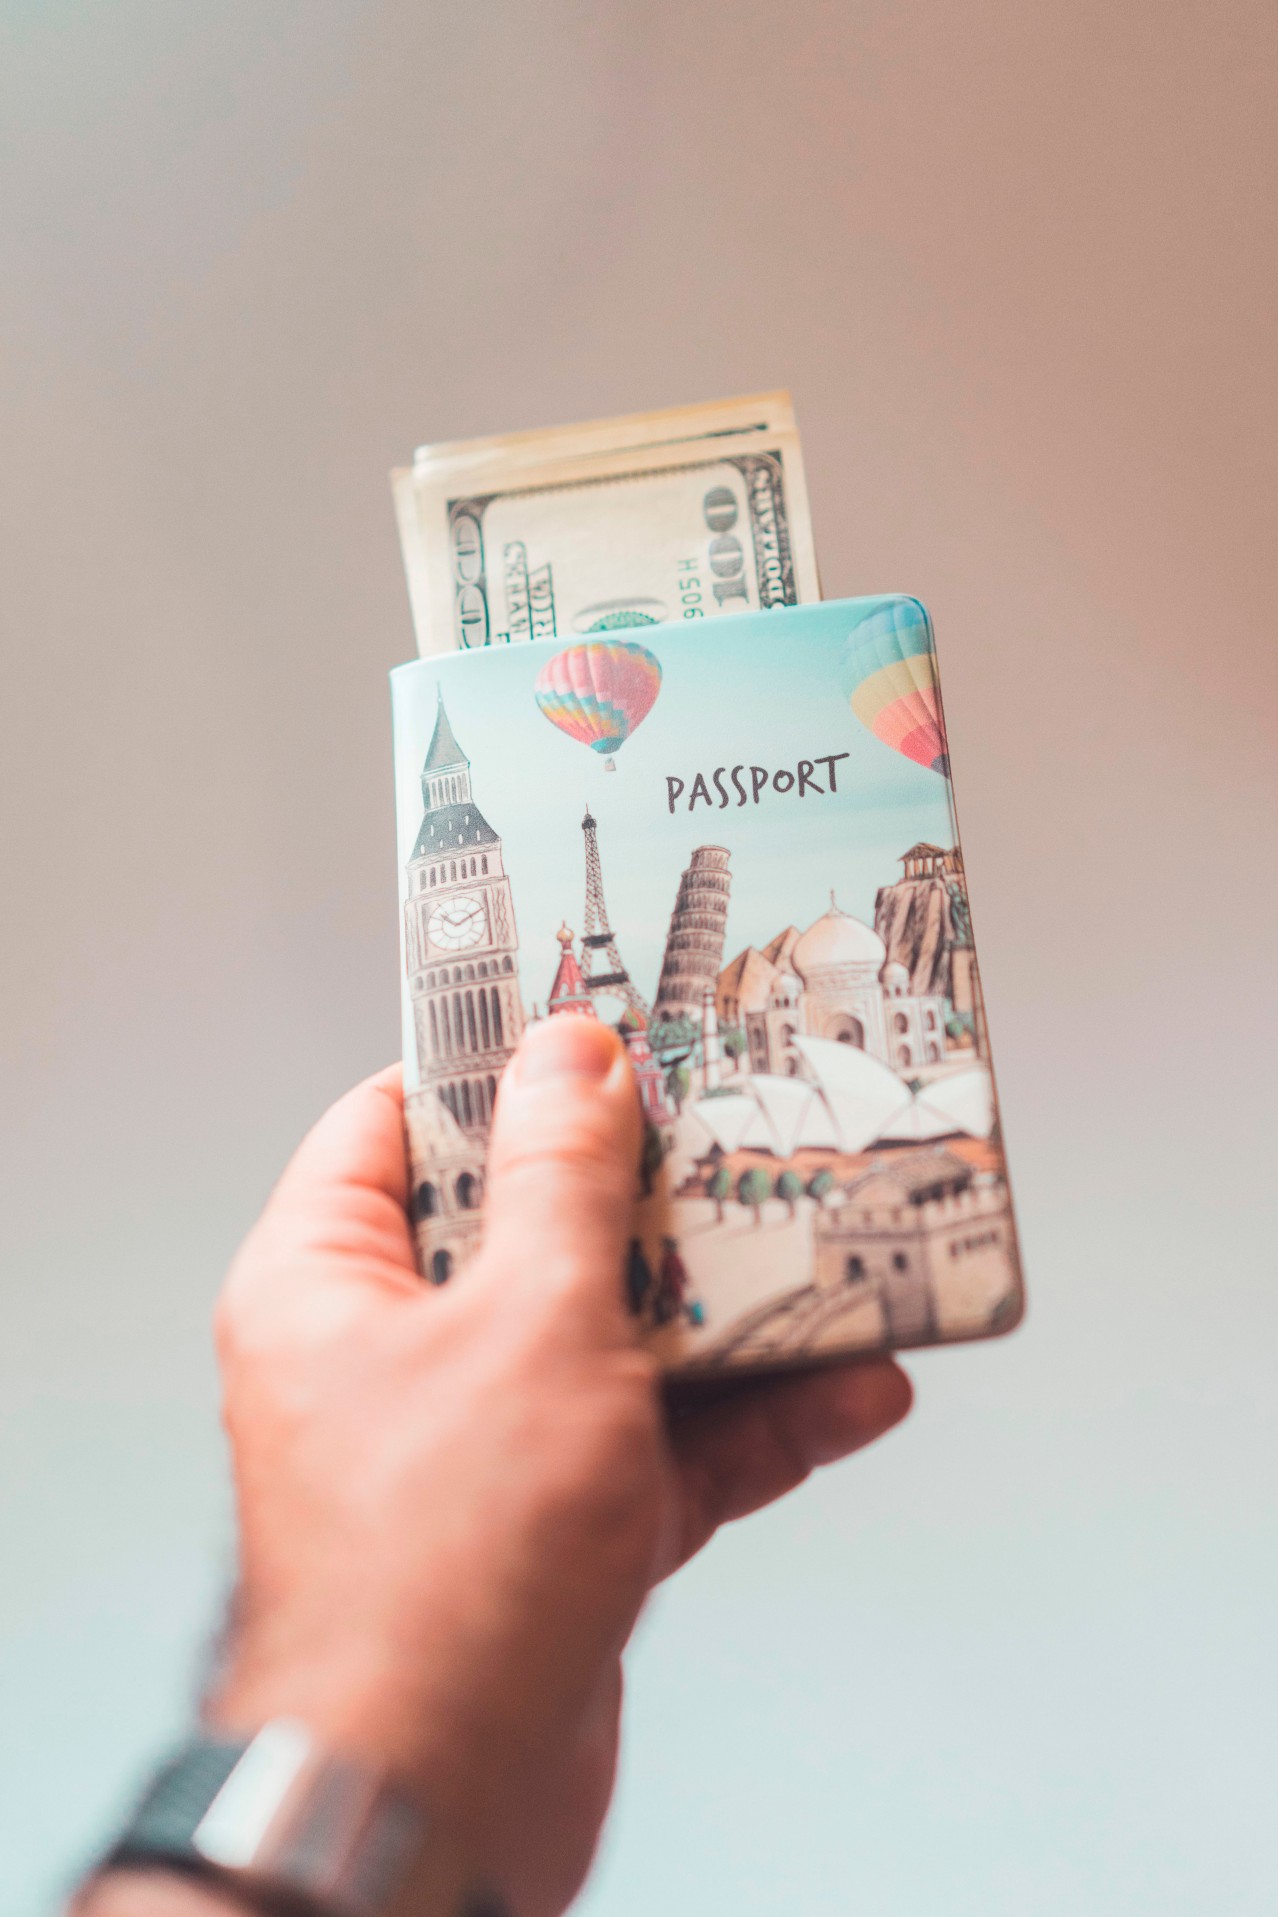 Passport and Money in Hand